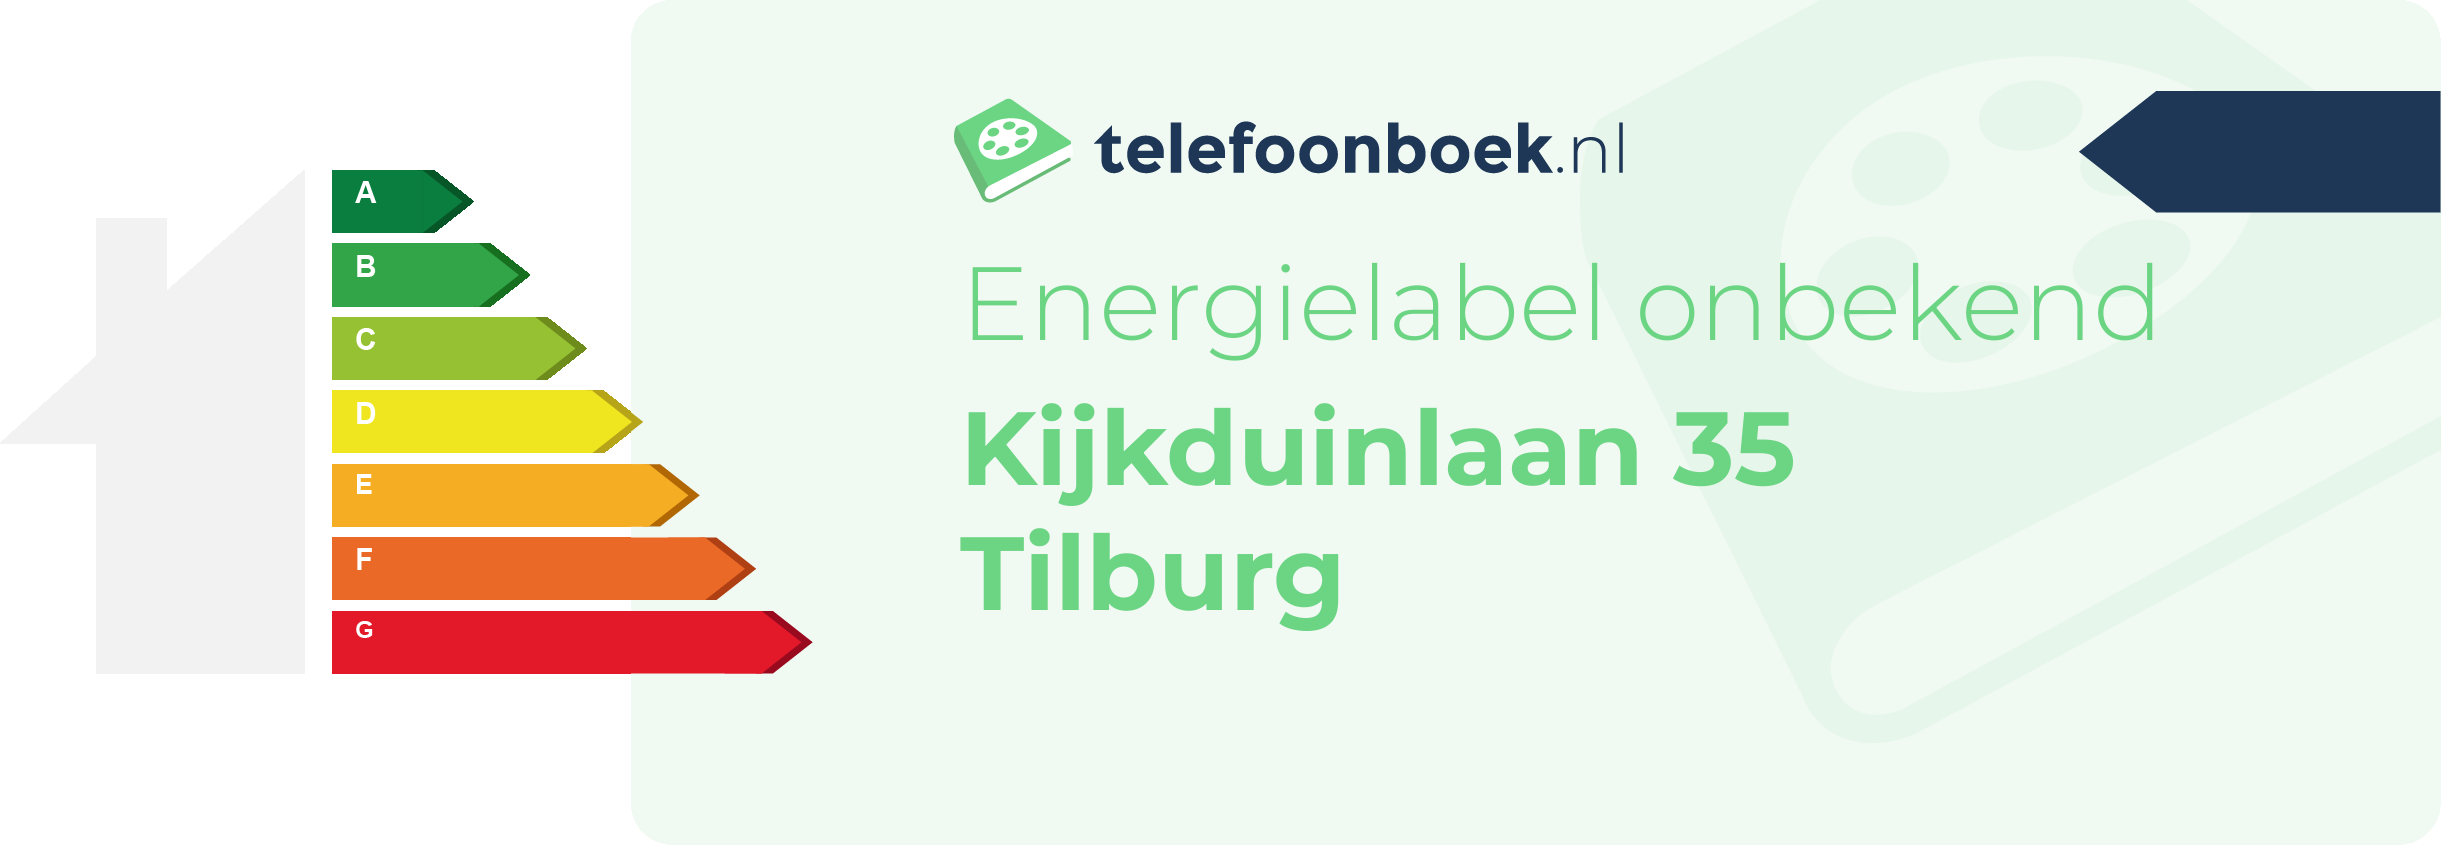 Energielabel Kijkduinlaan 35 Tilburg